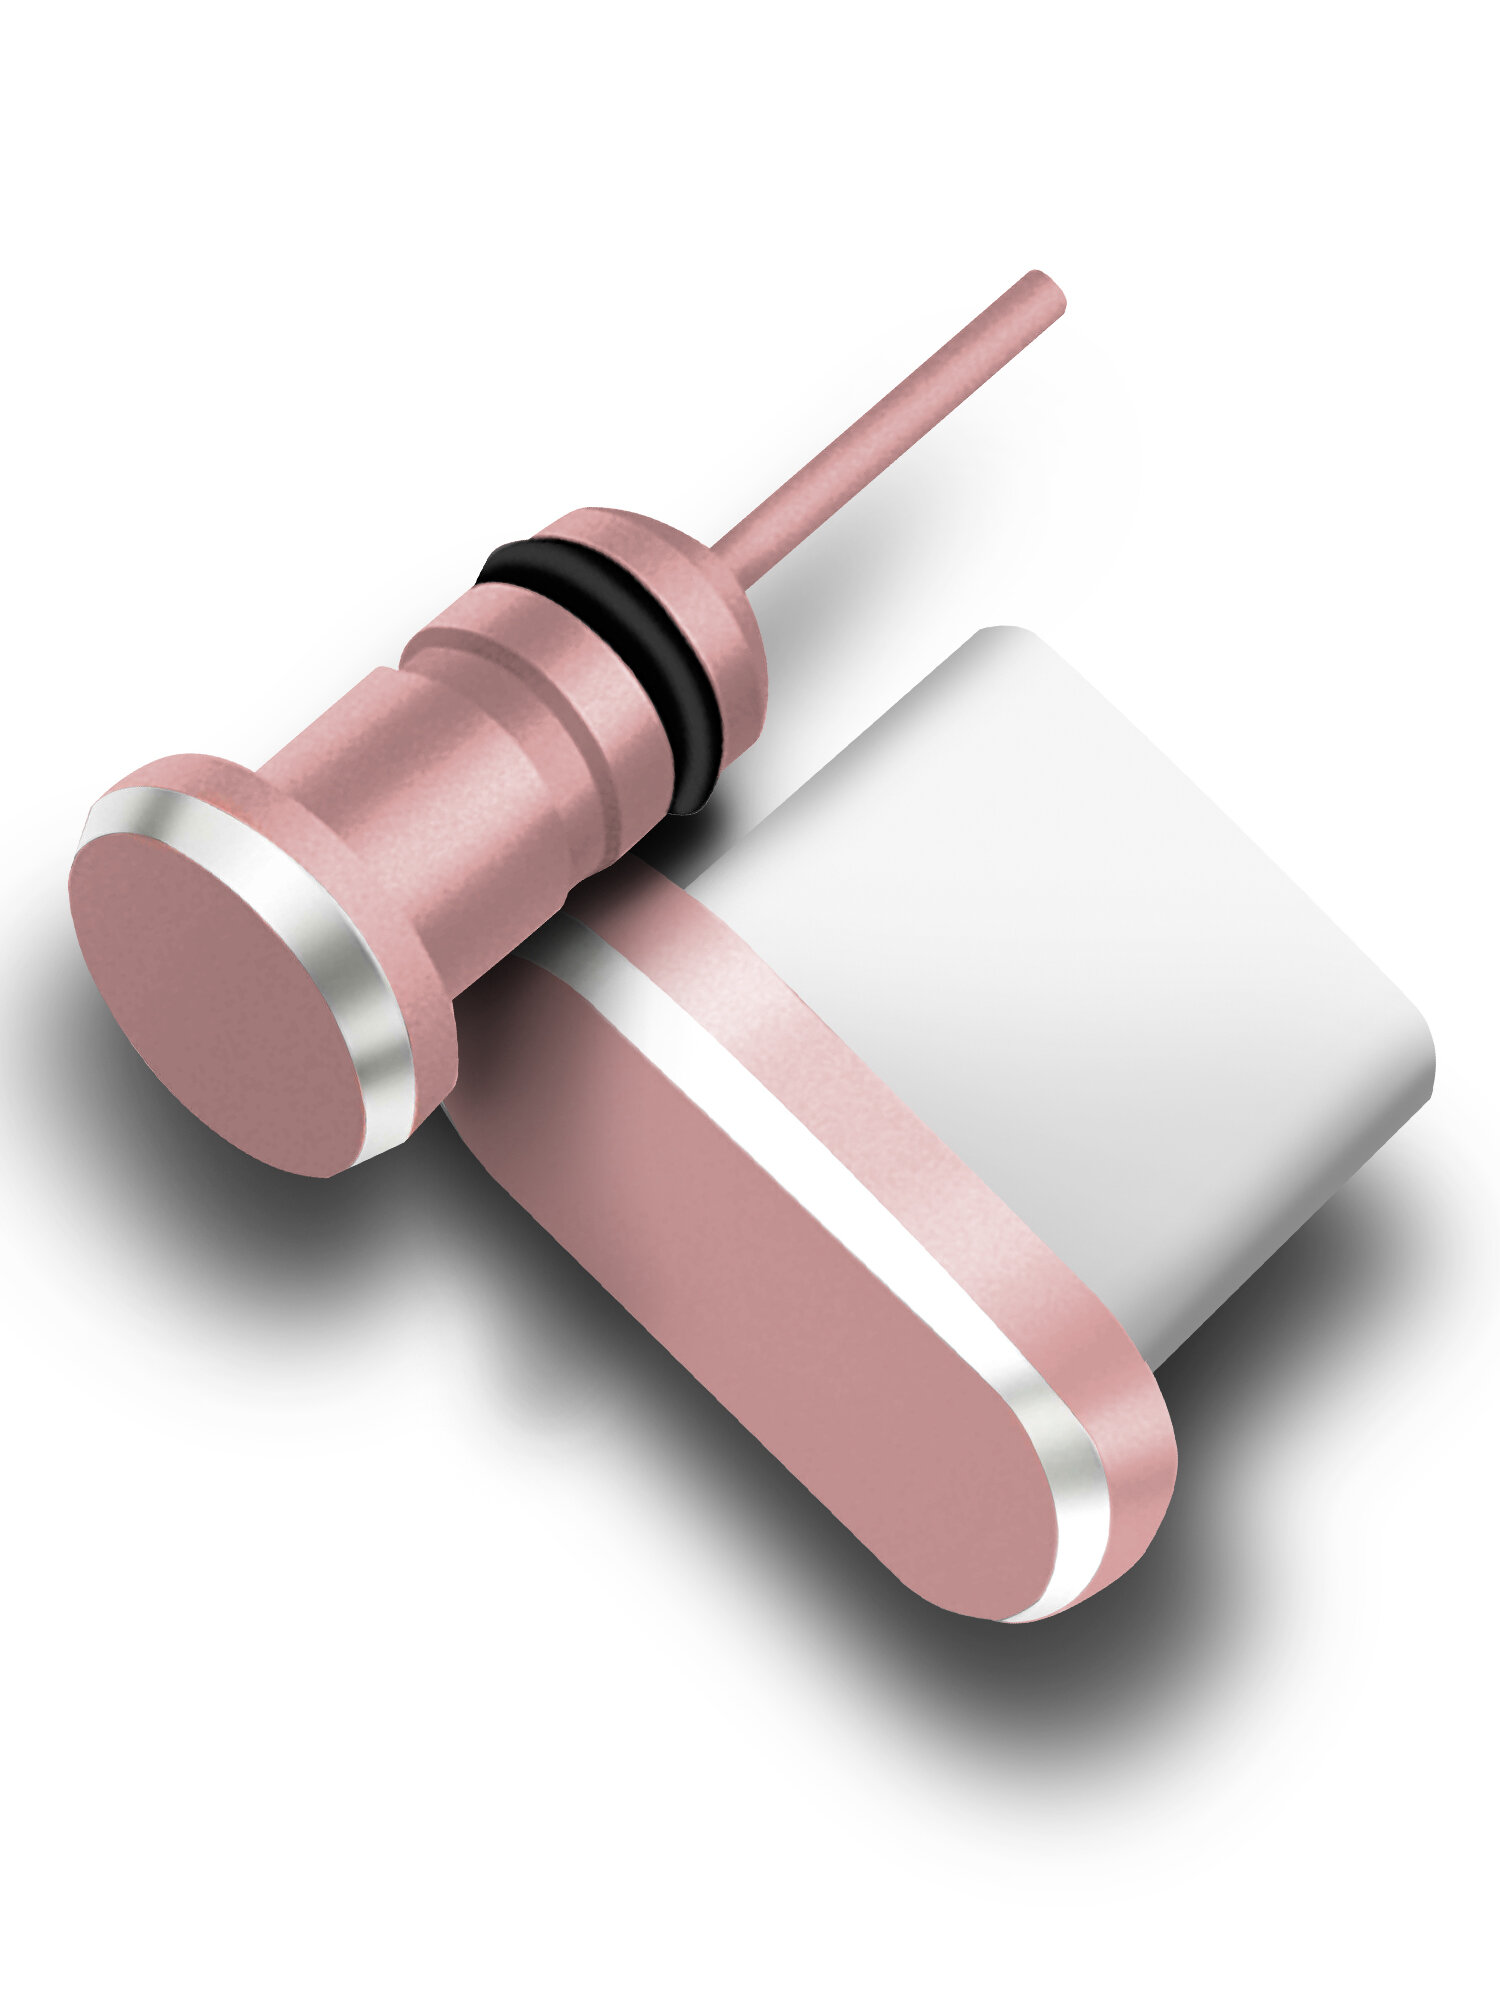 Комплект пылезащитных заглушек для разъема зарядки и наушников (AUX) для Type-C (2шт.) розовое золото, Brozo